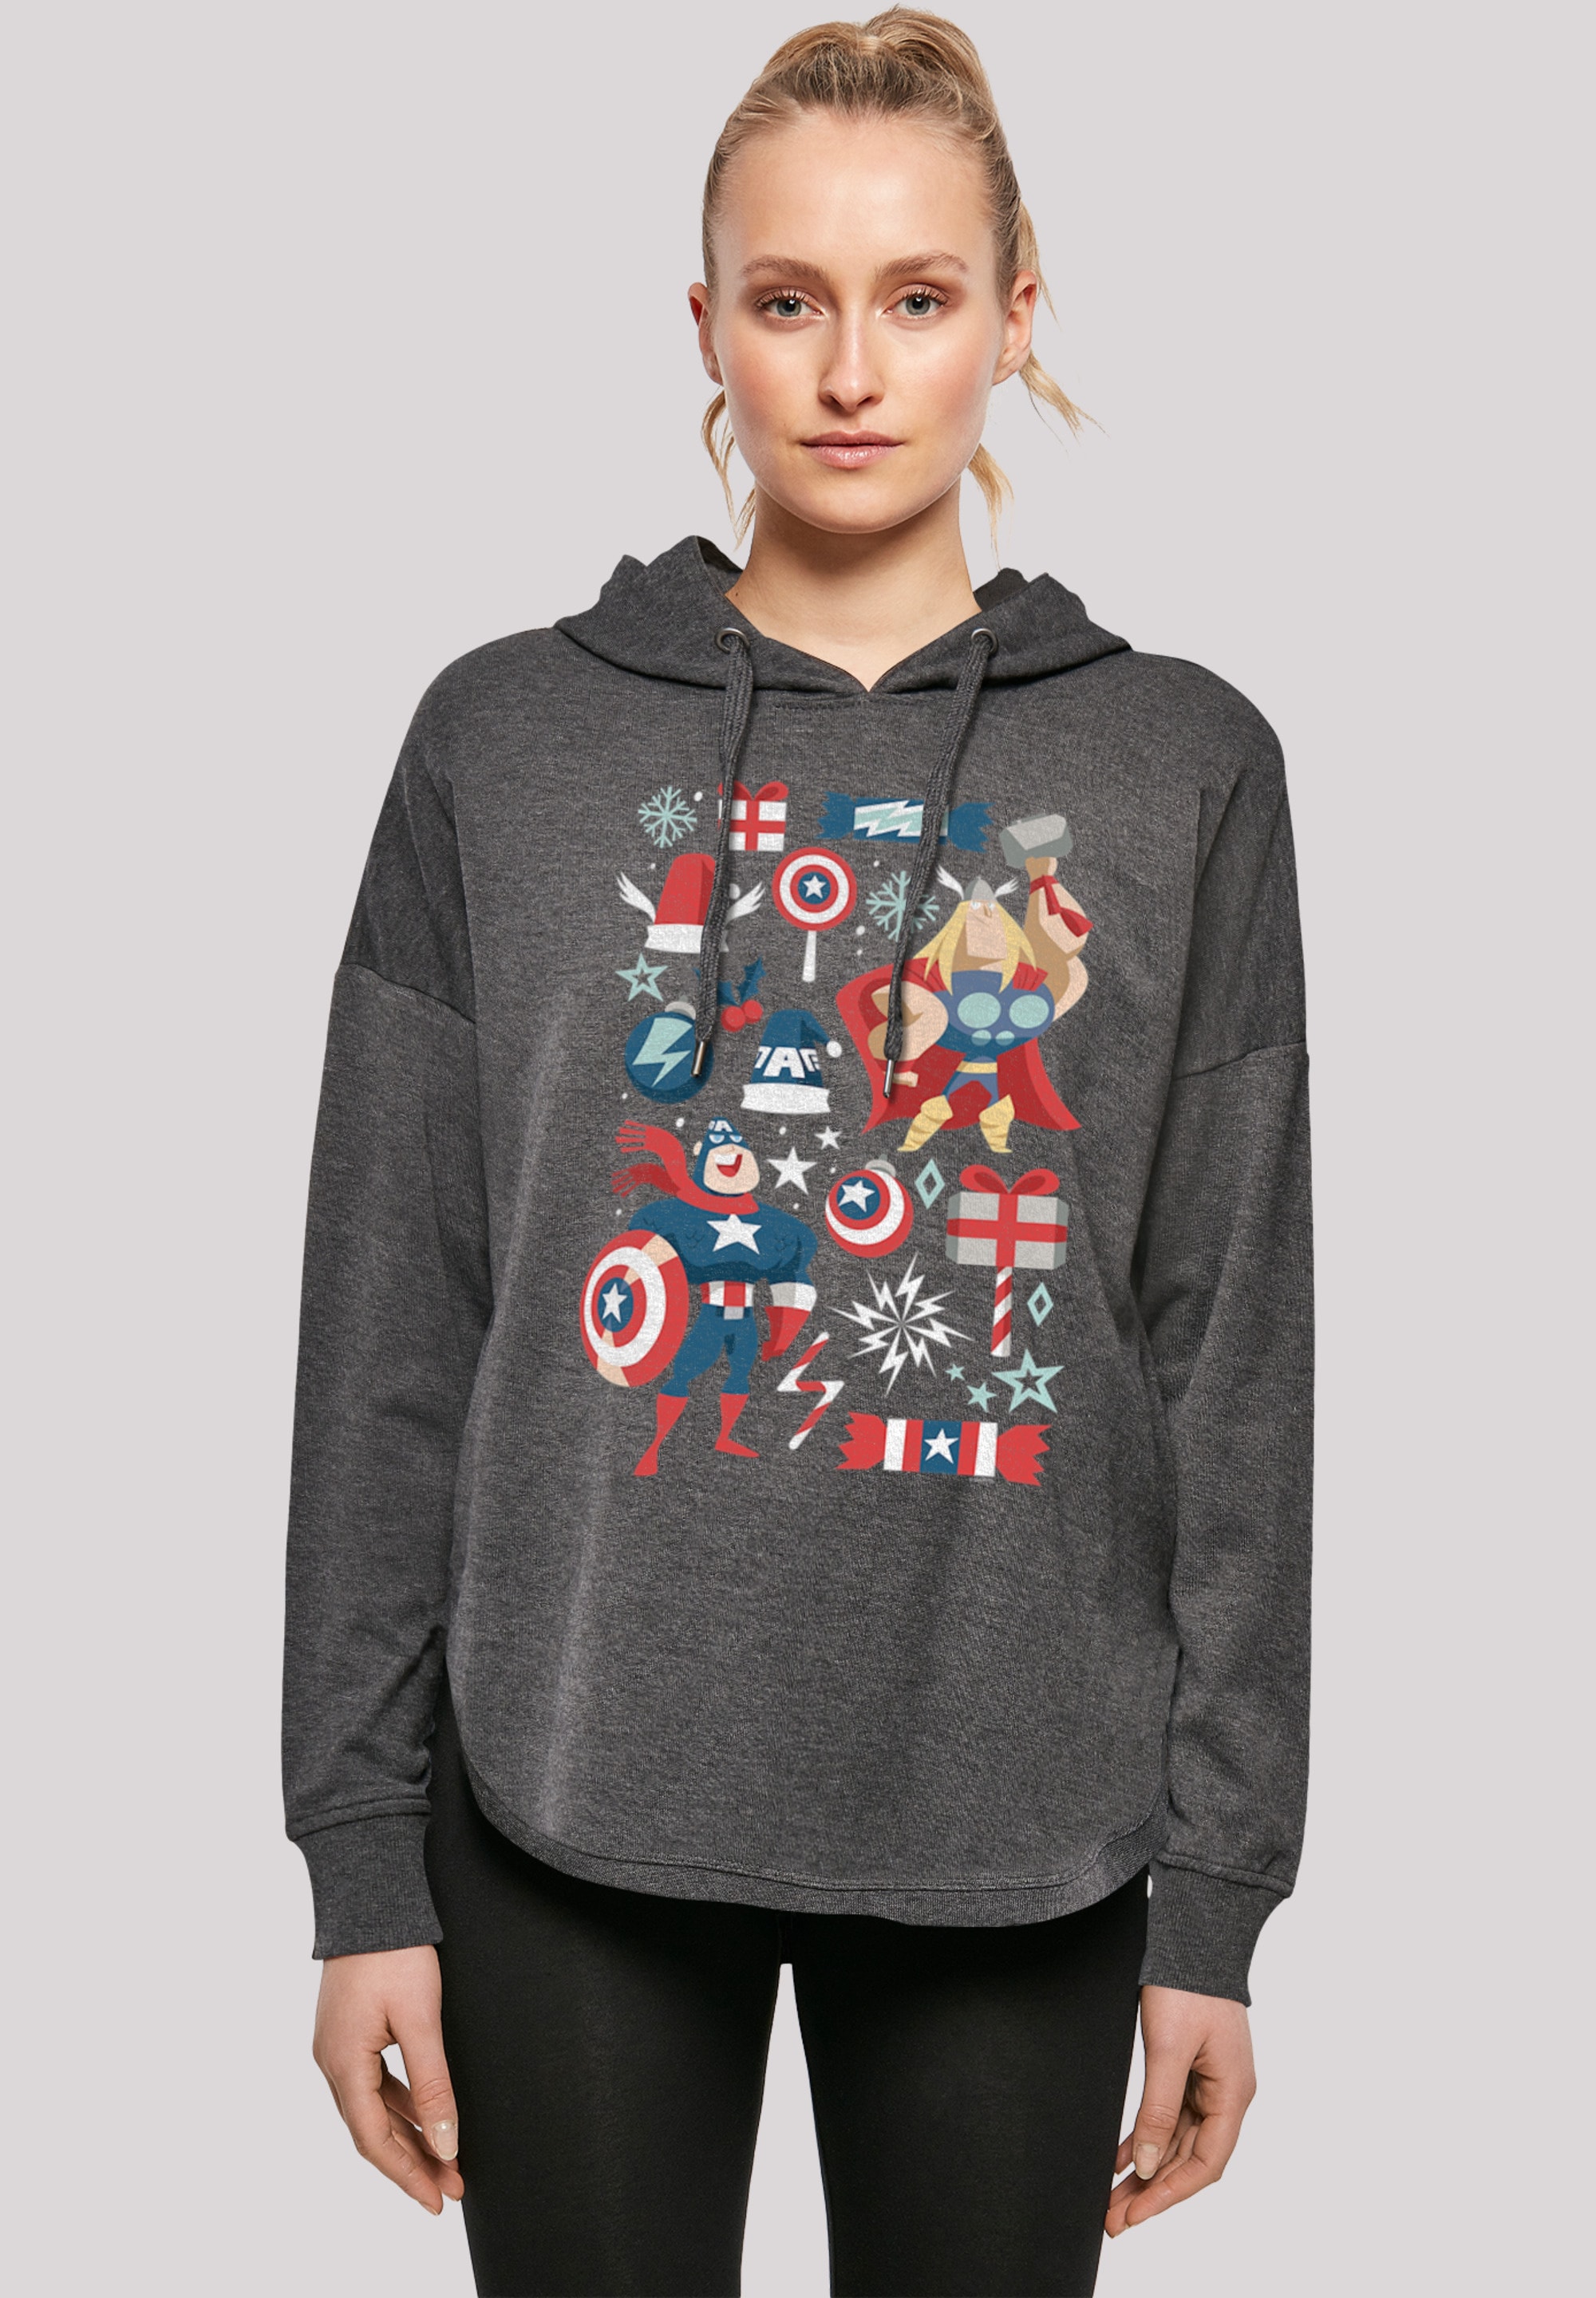 Captain »Marvel Kapuzenpullover Print F4NT4STIC America und Thor shoppen weihnachten«,